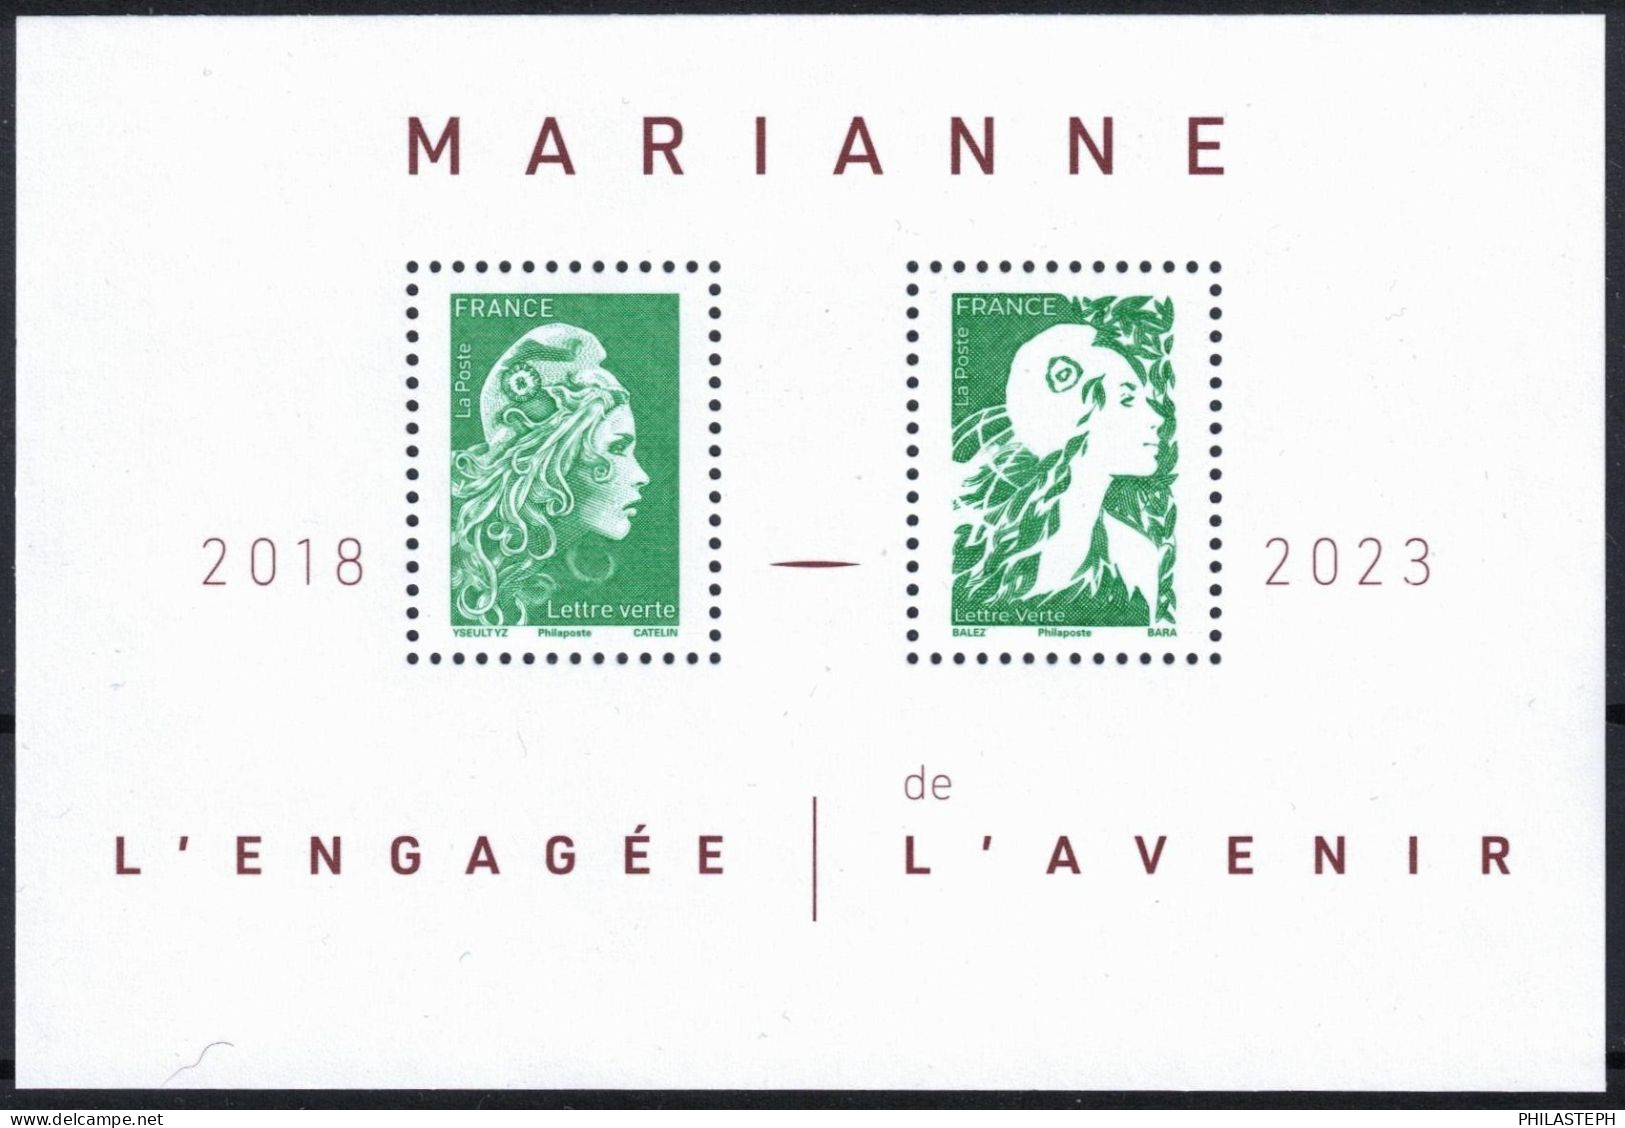 FRANCE 2024 -  Bloc Feuillet  LETTRE VERTE - MARIANNE L'ENGAGEE 2018 / MARIANNE DE L'AVENIR 2023 - BLOC YT 158 Neuf ** - Nuovi